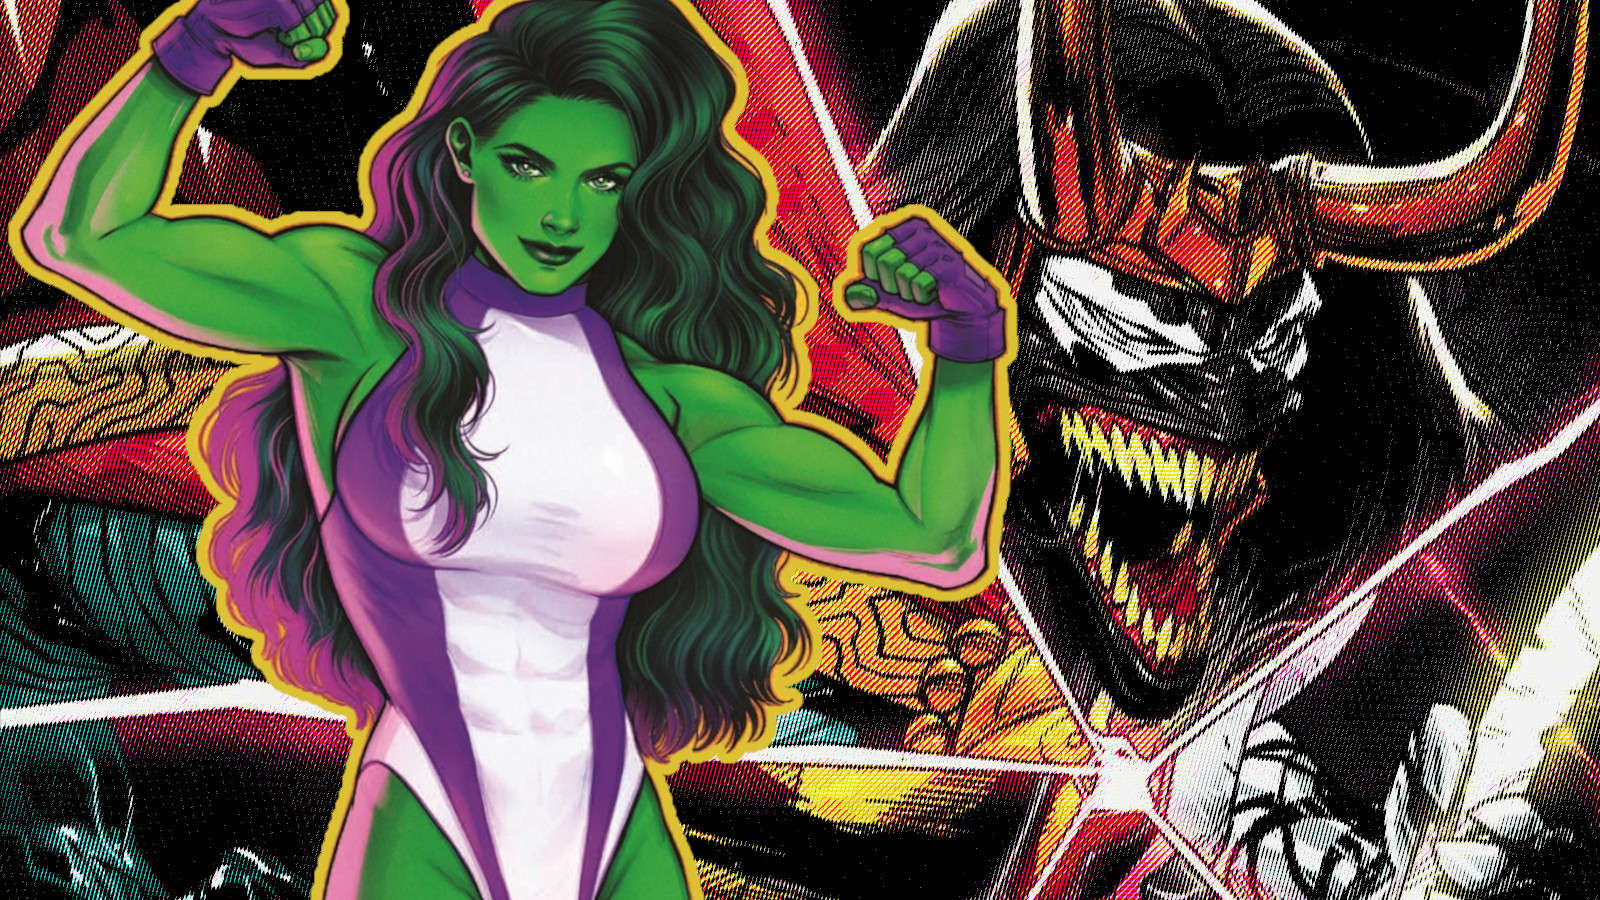 She-Hulk and a Venom hybrid